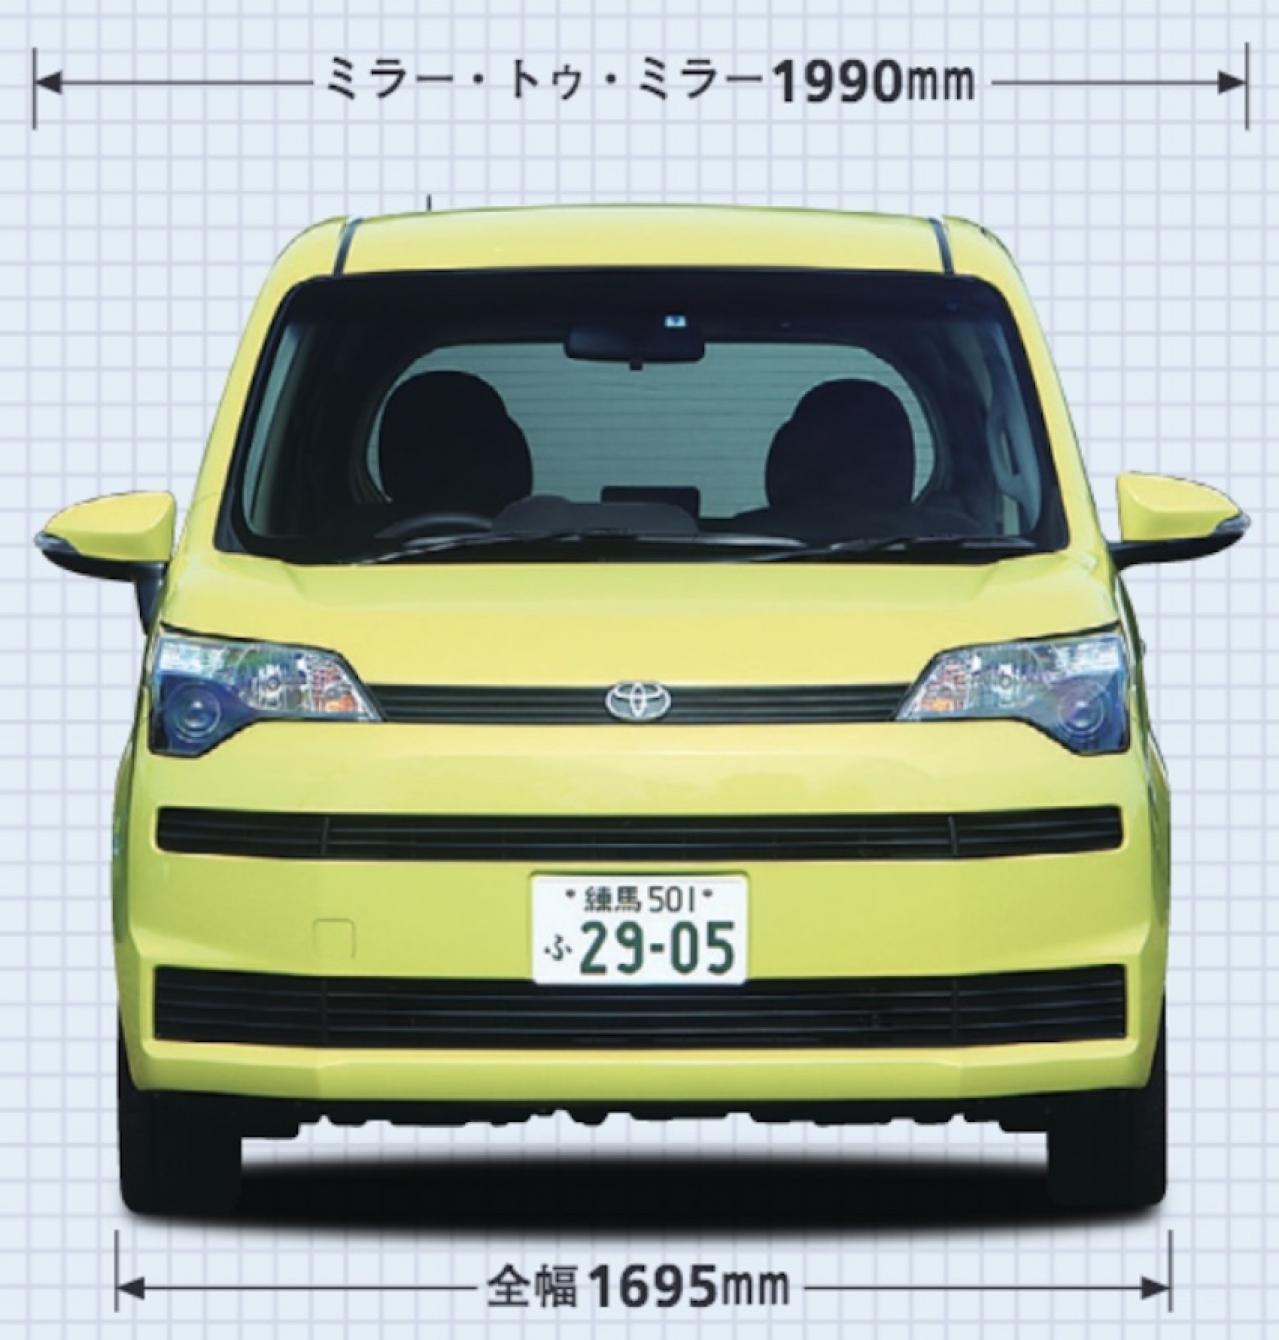 トヨタ Toyota スペイド ミニバン ワンボックス 新型自動車カタログ 価格 試乗インプレ 技術開発 Motor Fan モーターファン